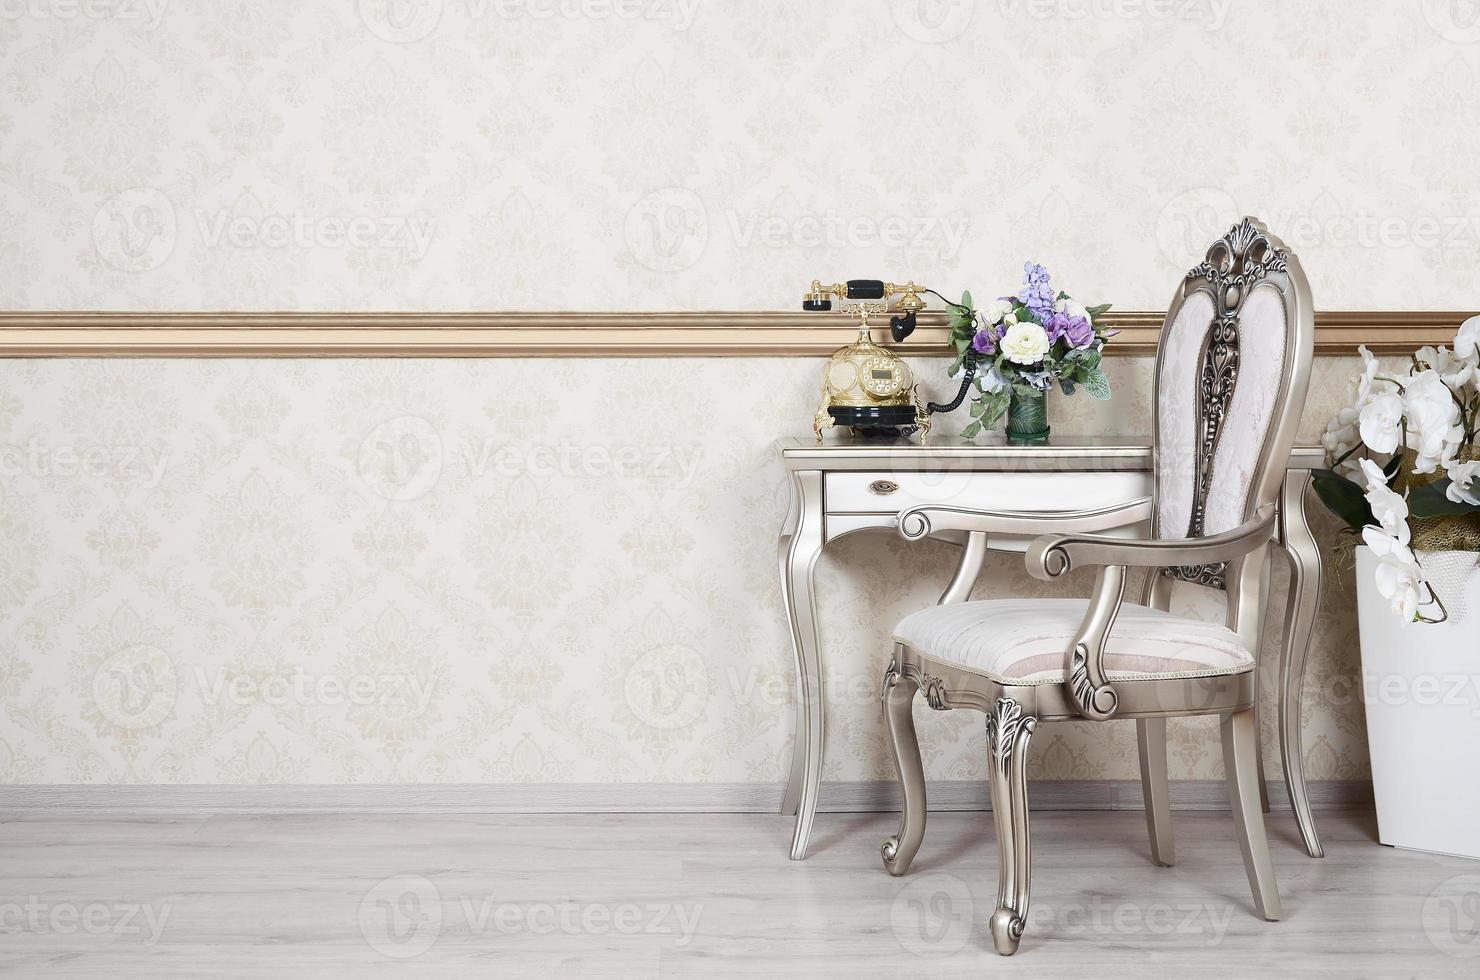 um fragmento de um interior retrô com uma cadeira e uma mesa na qual está localizado um telefone e um vaso de flores foto